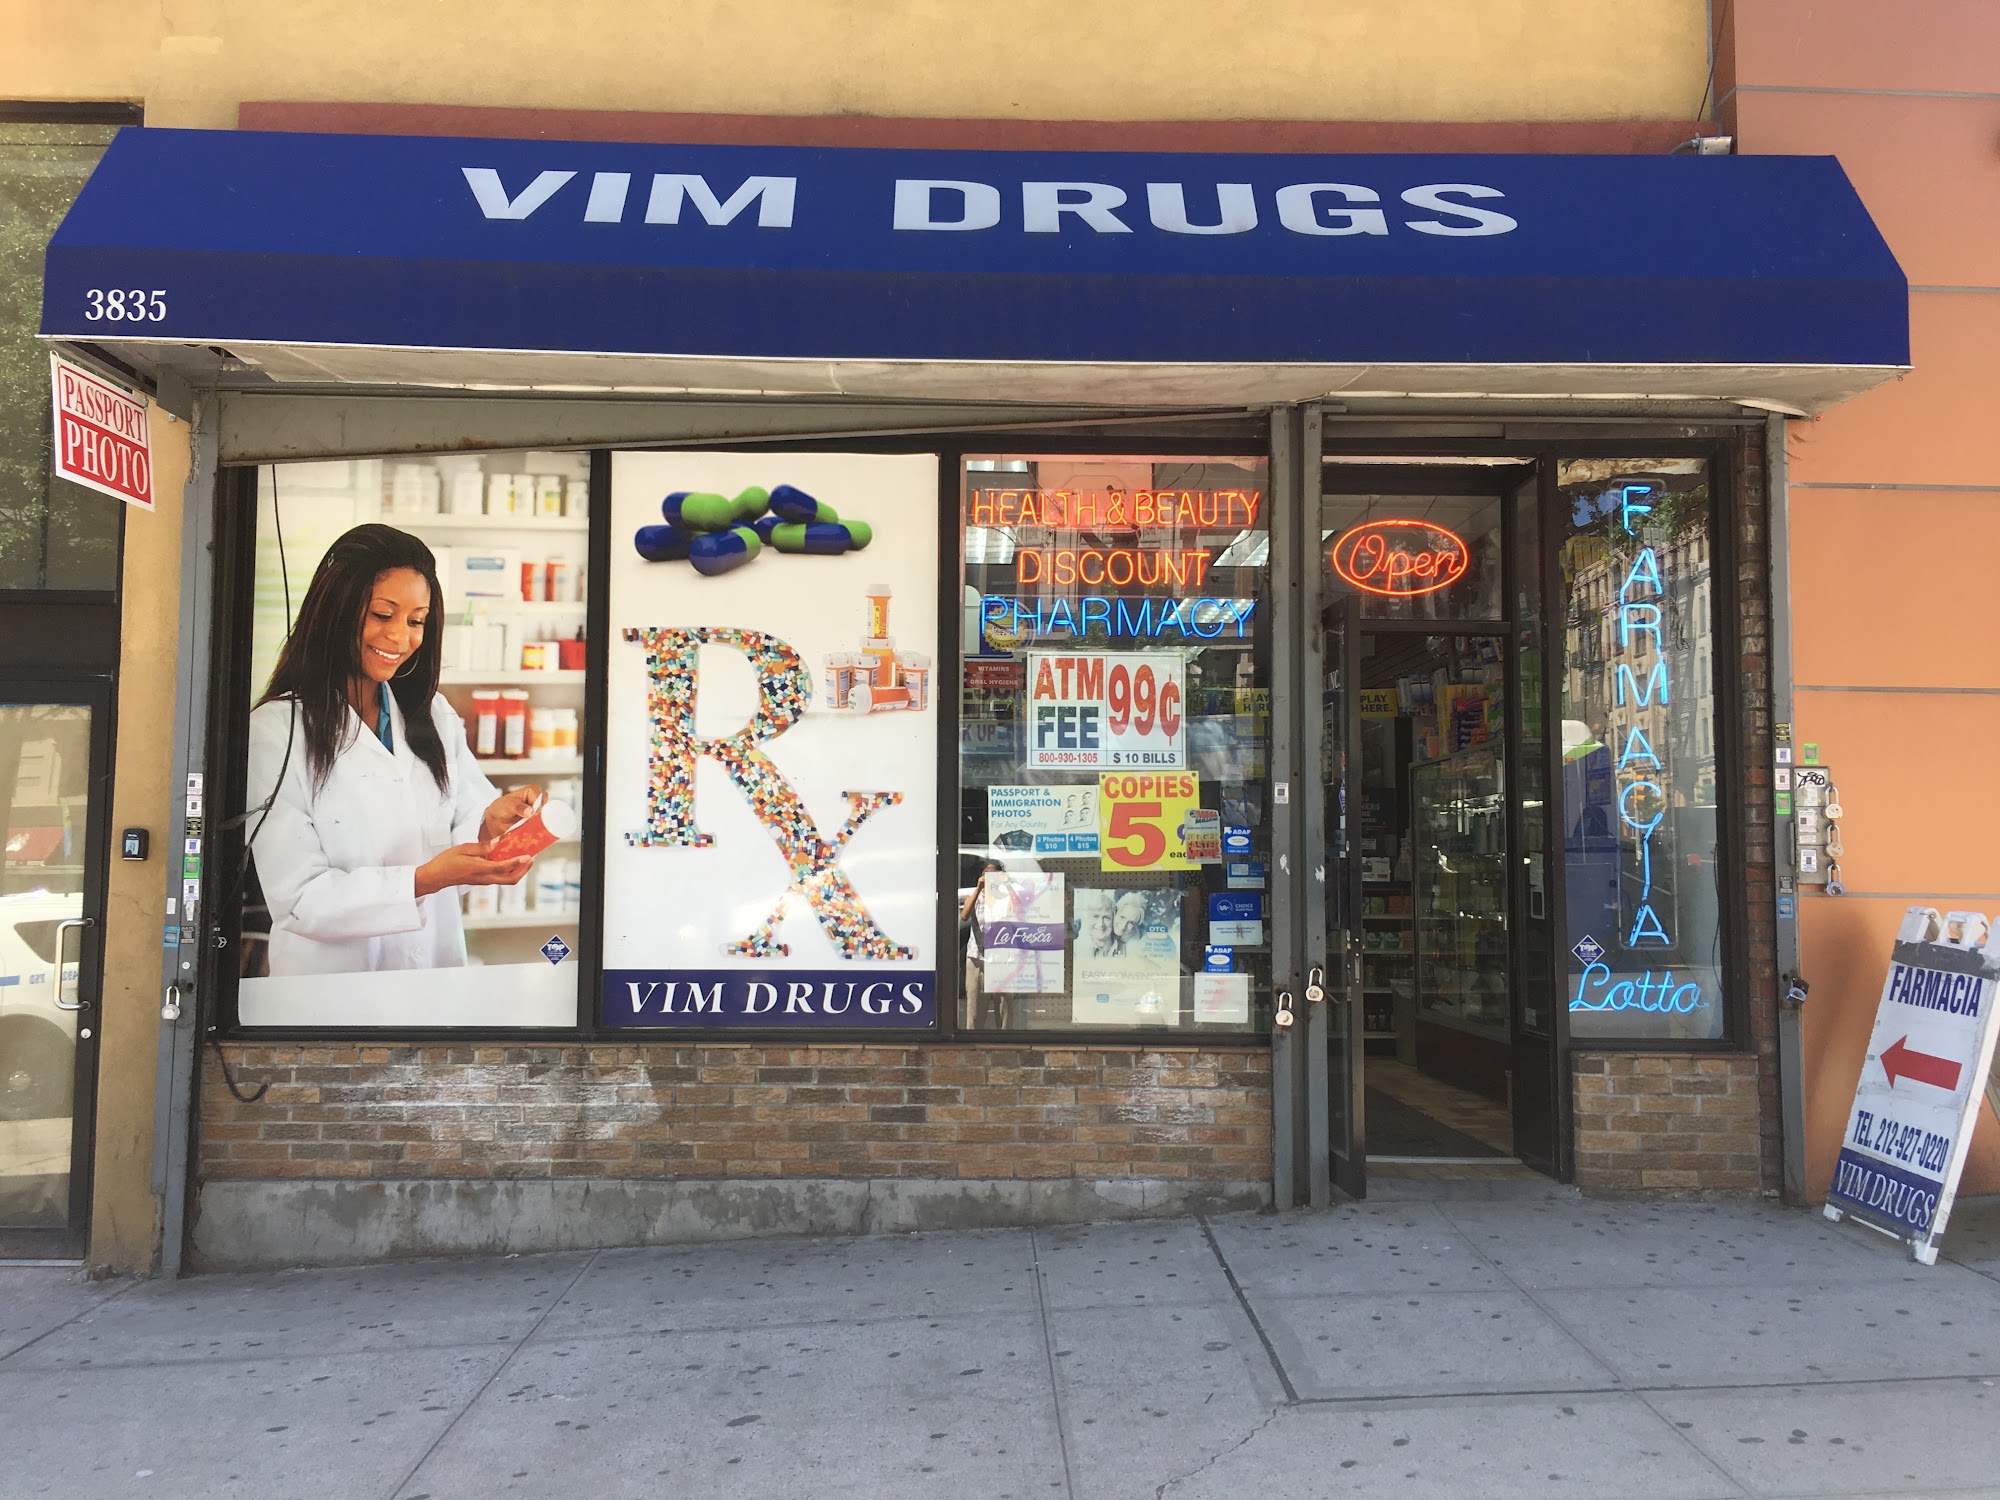 Vim Drugs